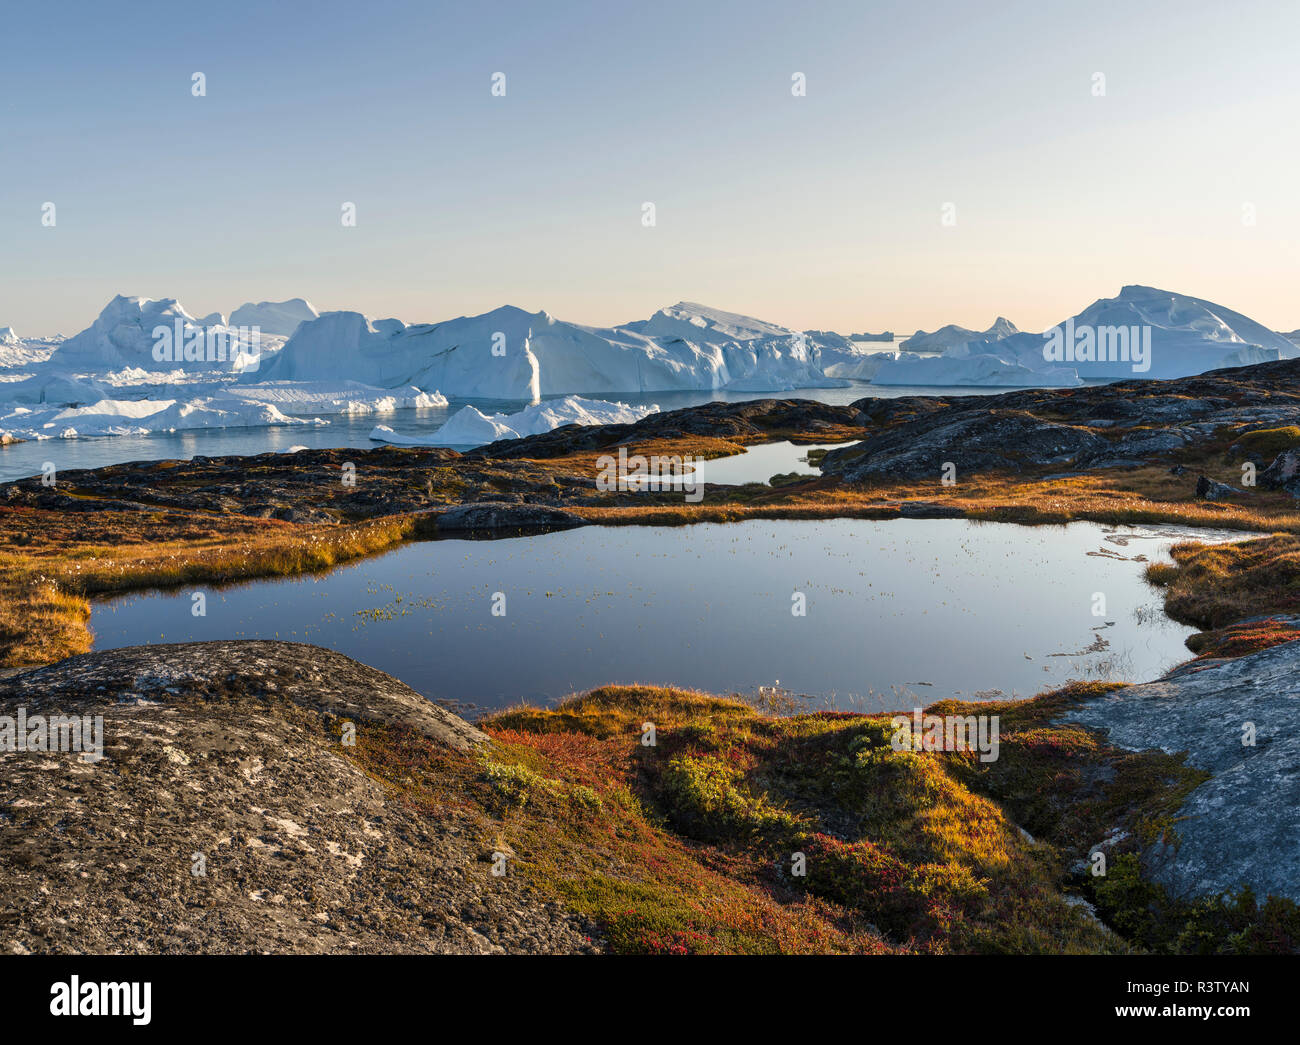 Ilulissat, Site du patrimoine mondial de l'UNESCO, appelé aussi kangia Kangerlua Ilulissat ou à la baie de Disko. Le Groenland, Danemark Banque D'Images